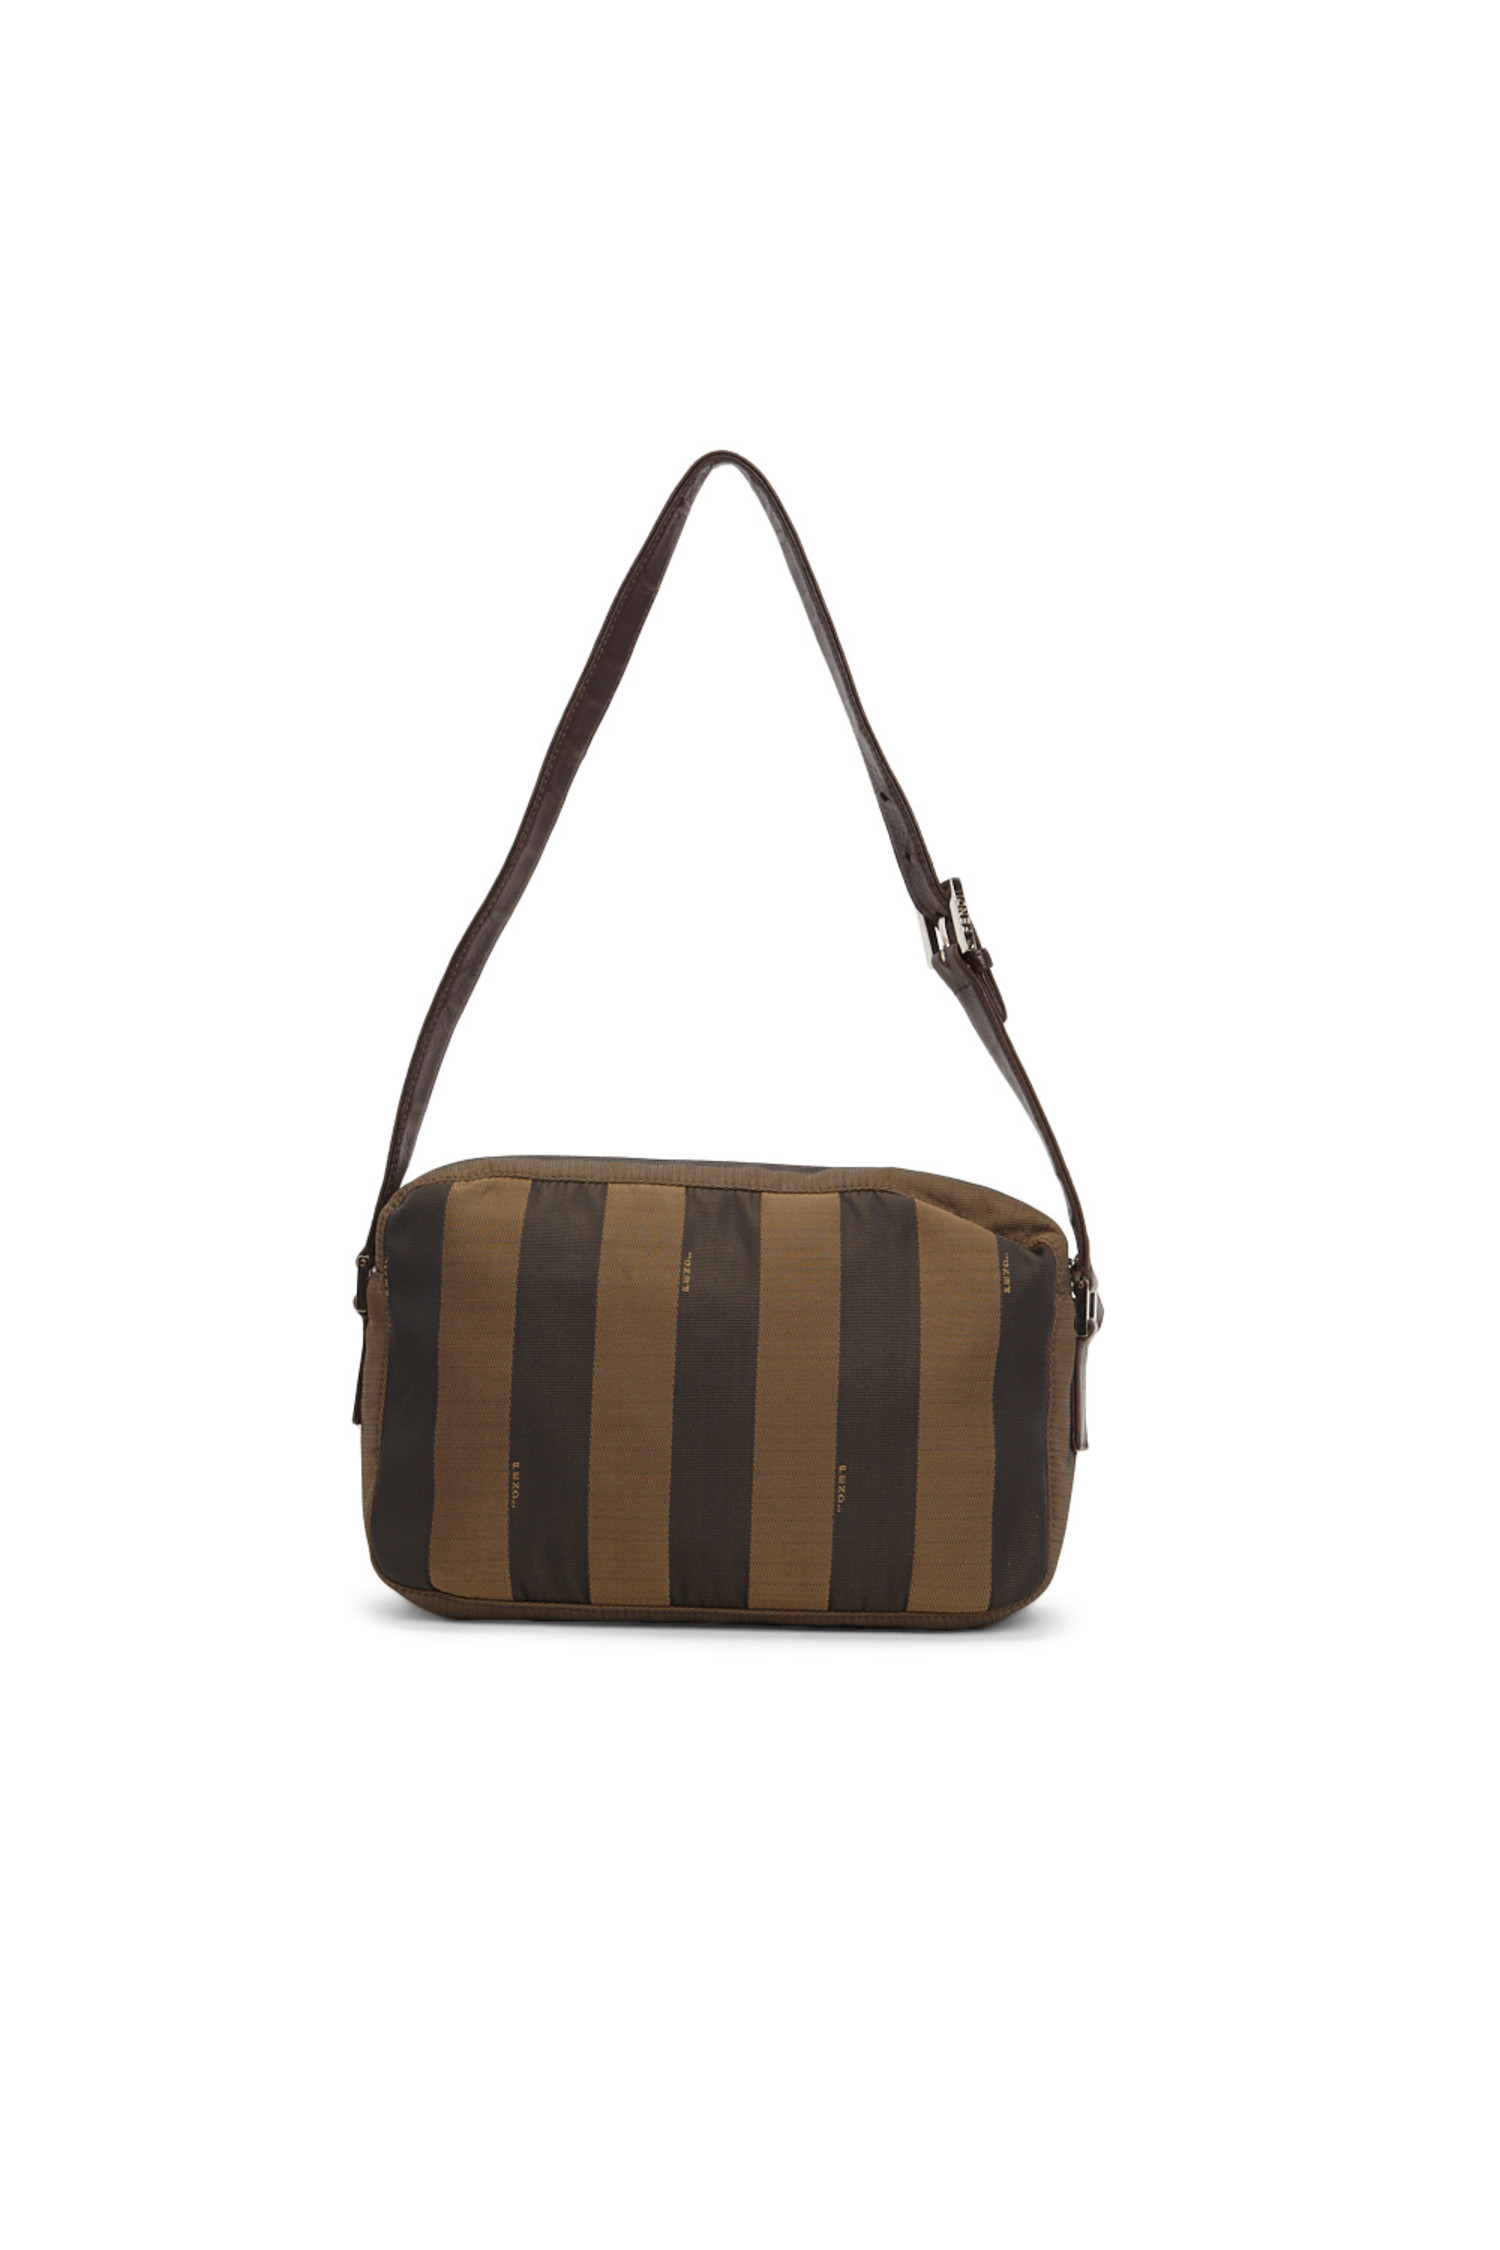 vintage fendi striped bag